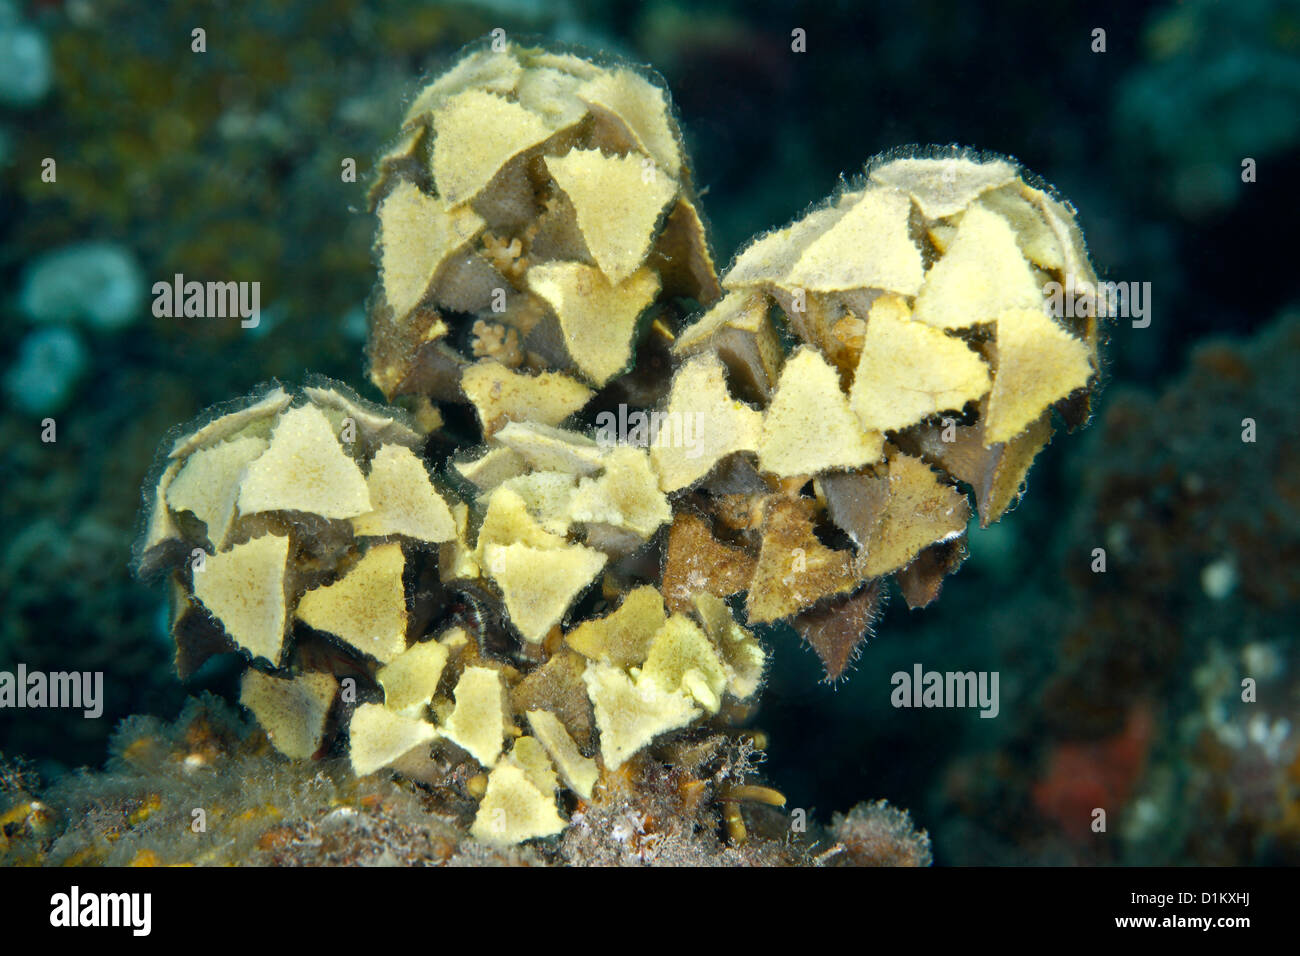 Les algues marines, Turbinaria ornata. C'est une algue tropicale brown trouvés sur les écosystèmes des récifs coralliens. Seraya, Tulamben, Bali, Indonésie Banque D'Images